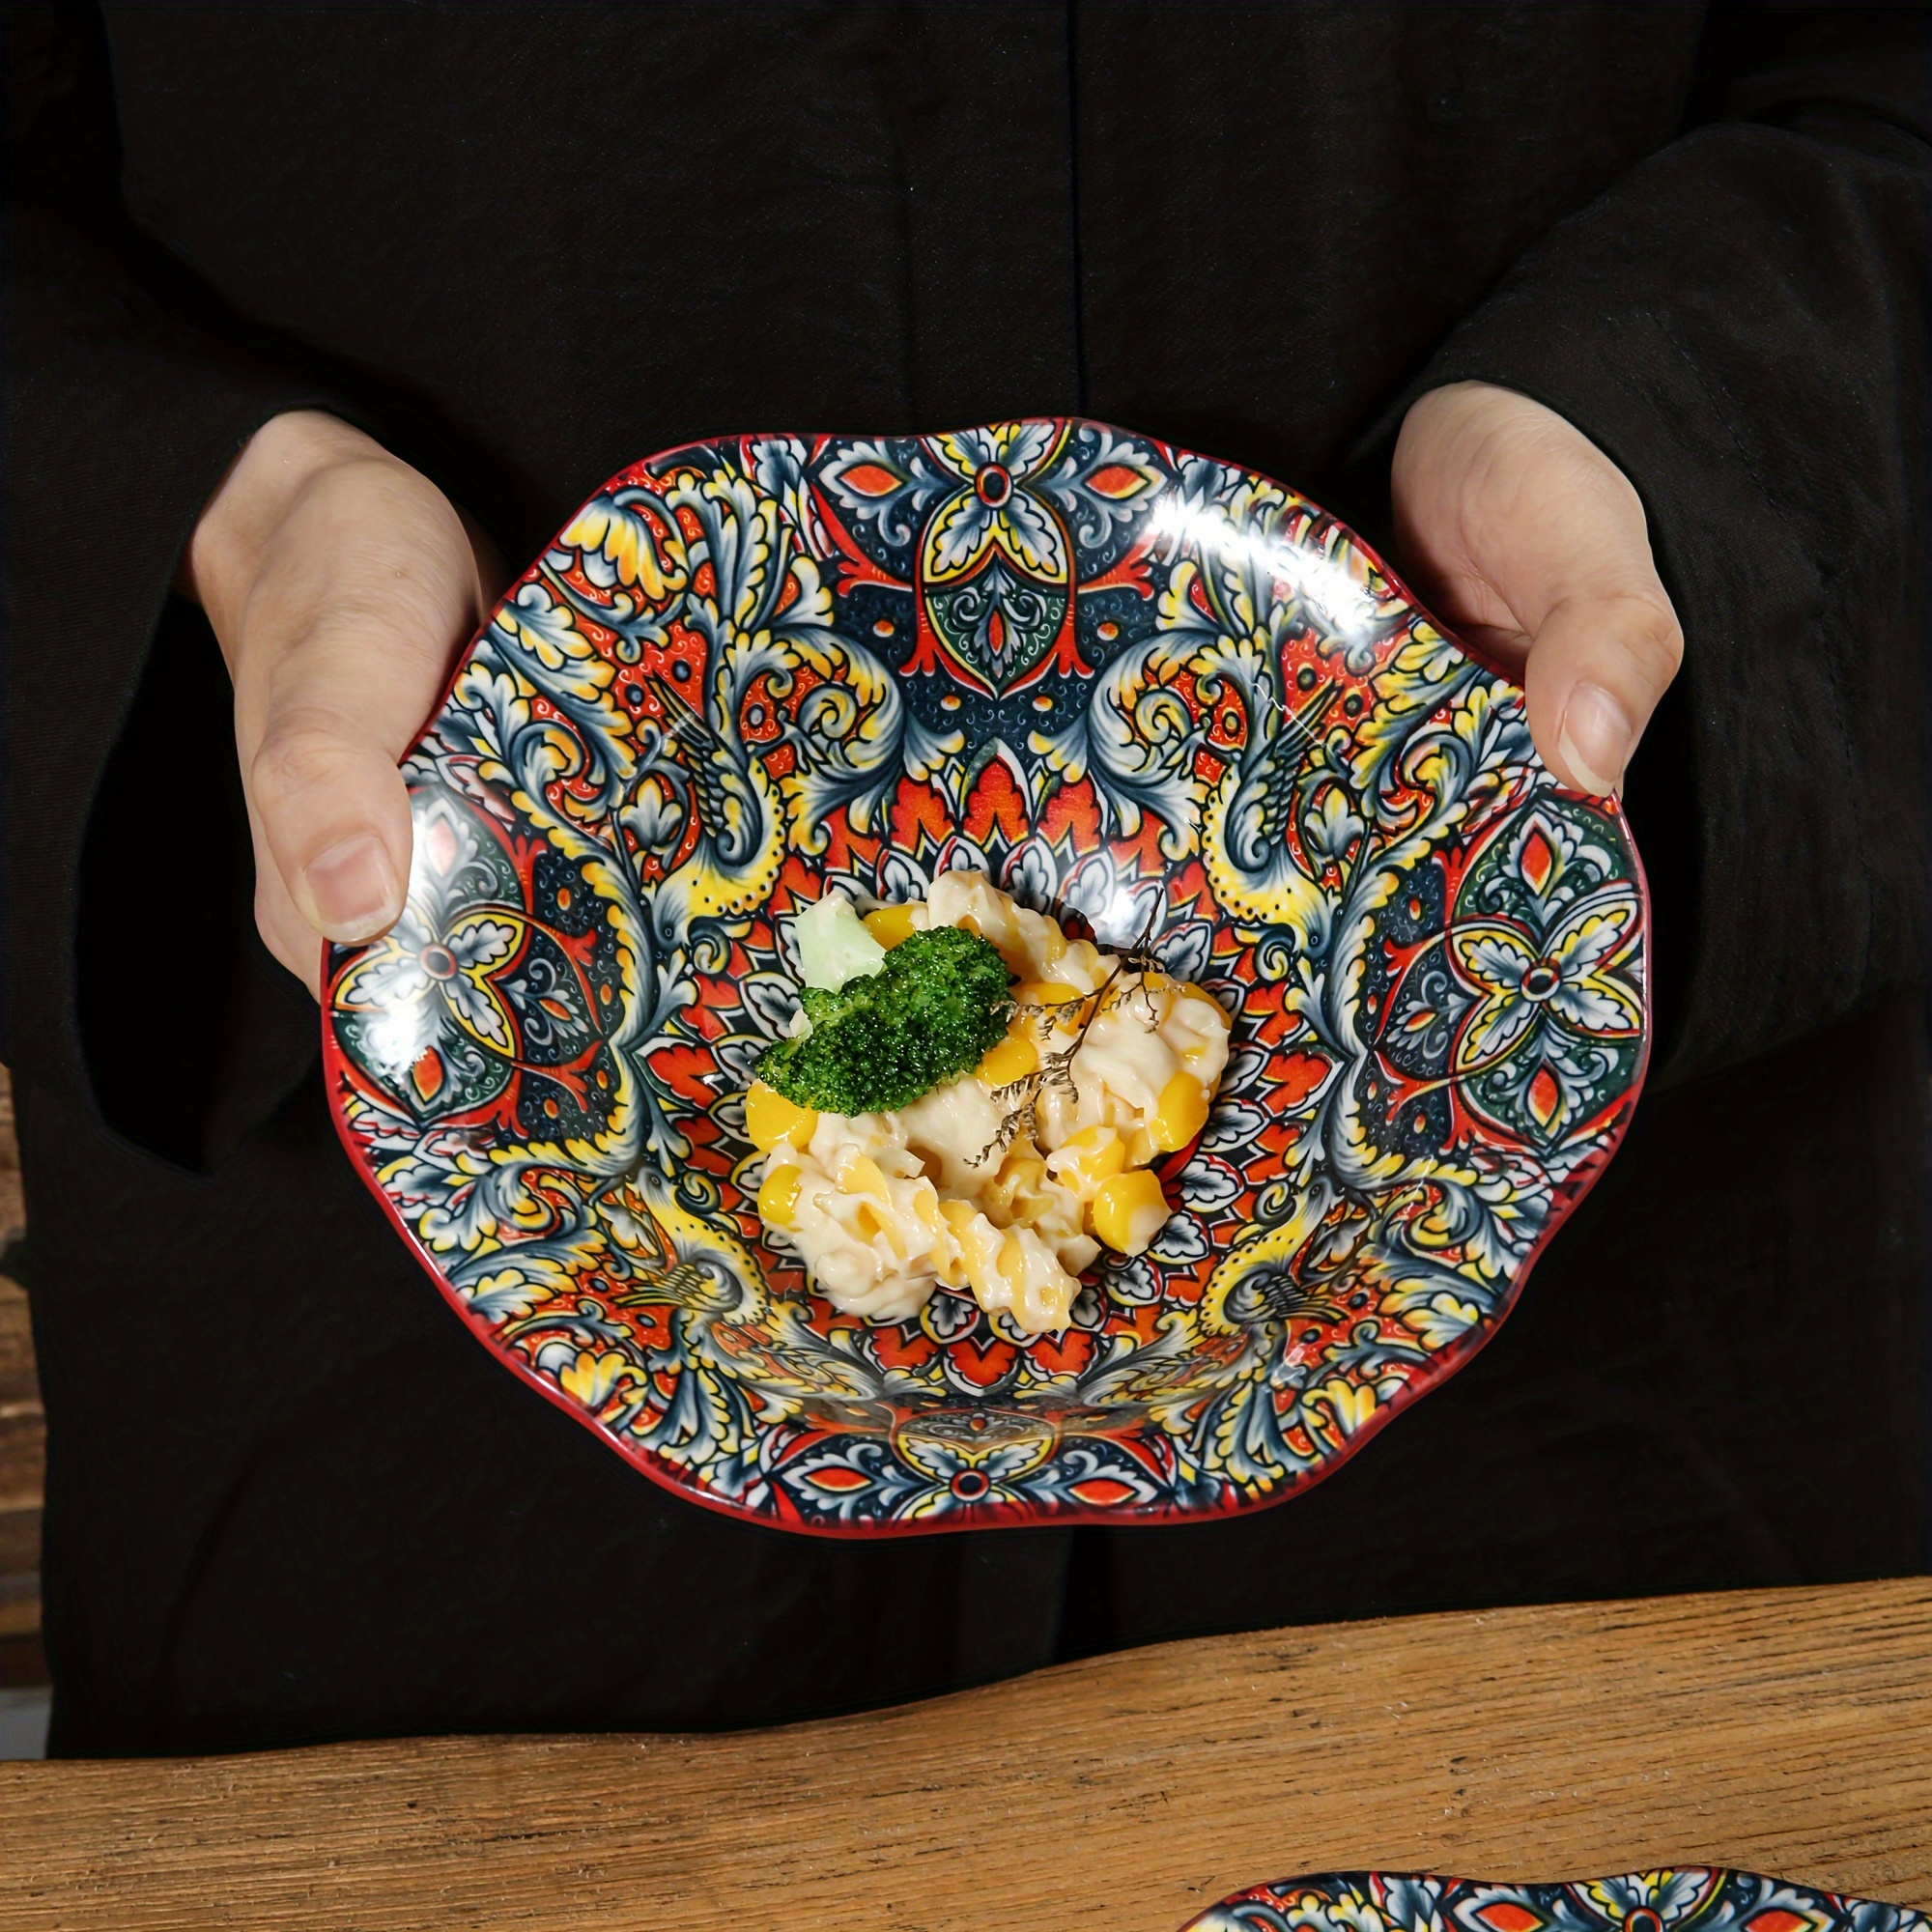 

Bohemian Floral Ceramic Salad Bowl - Microwave Safe, Irregular Shape For Home & Restaurant Use Decorative Bowl For Home Decor Wooden Salad Bowl